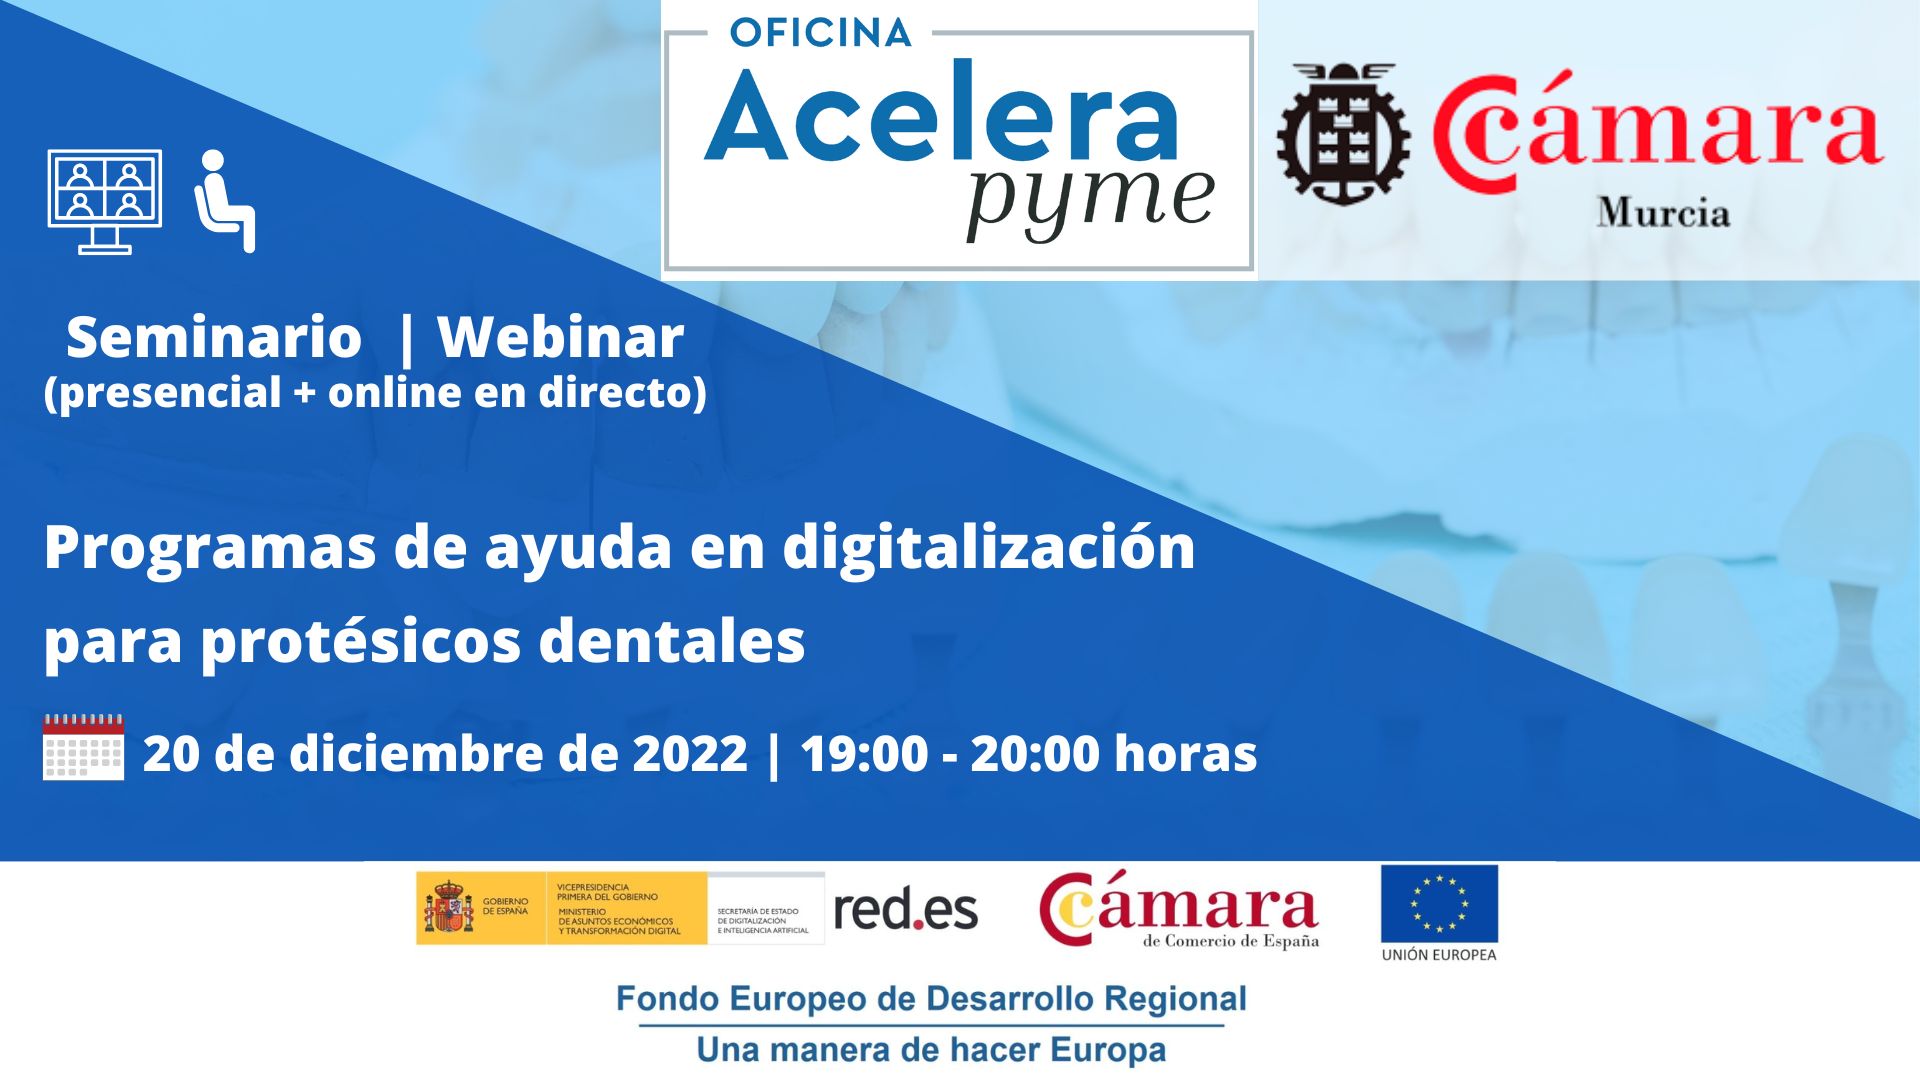 Oficina Acelera Pyme | seminario | Programas de ayuda a la digitalización para protésicos dentales | Cámara Comercio de Murcia